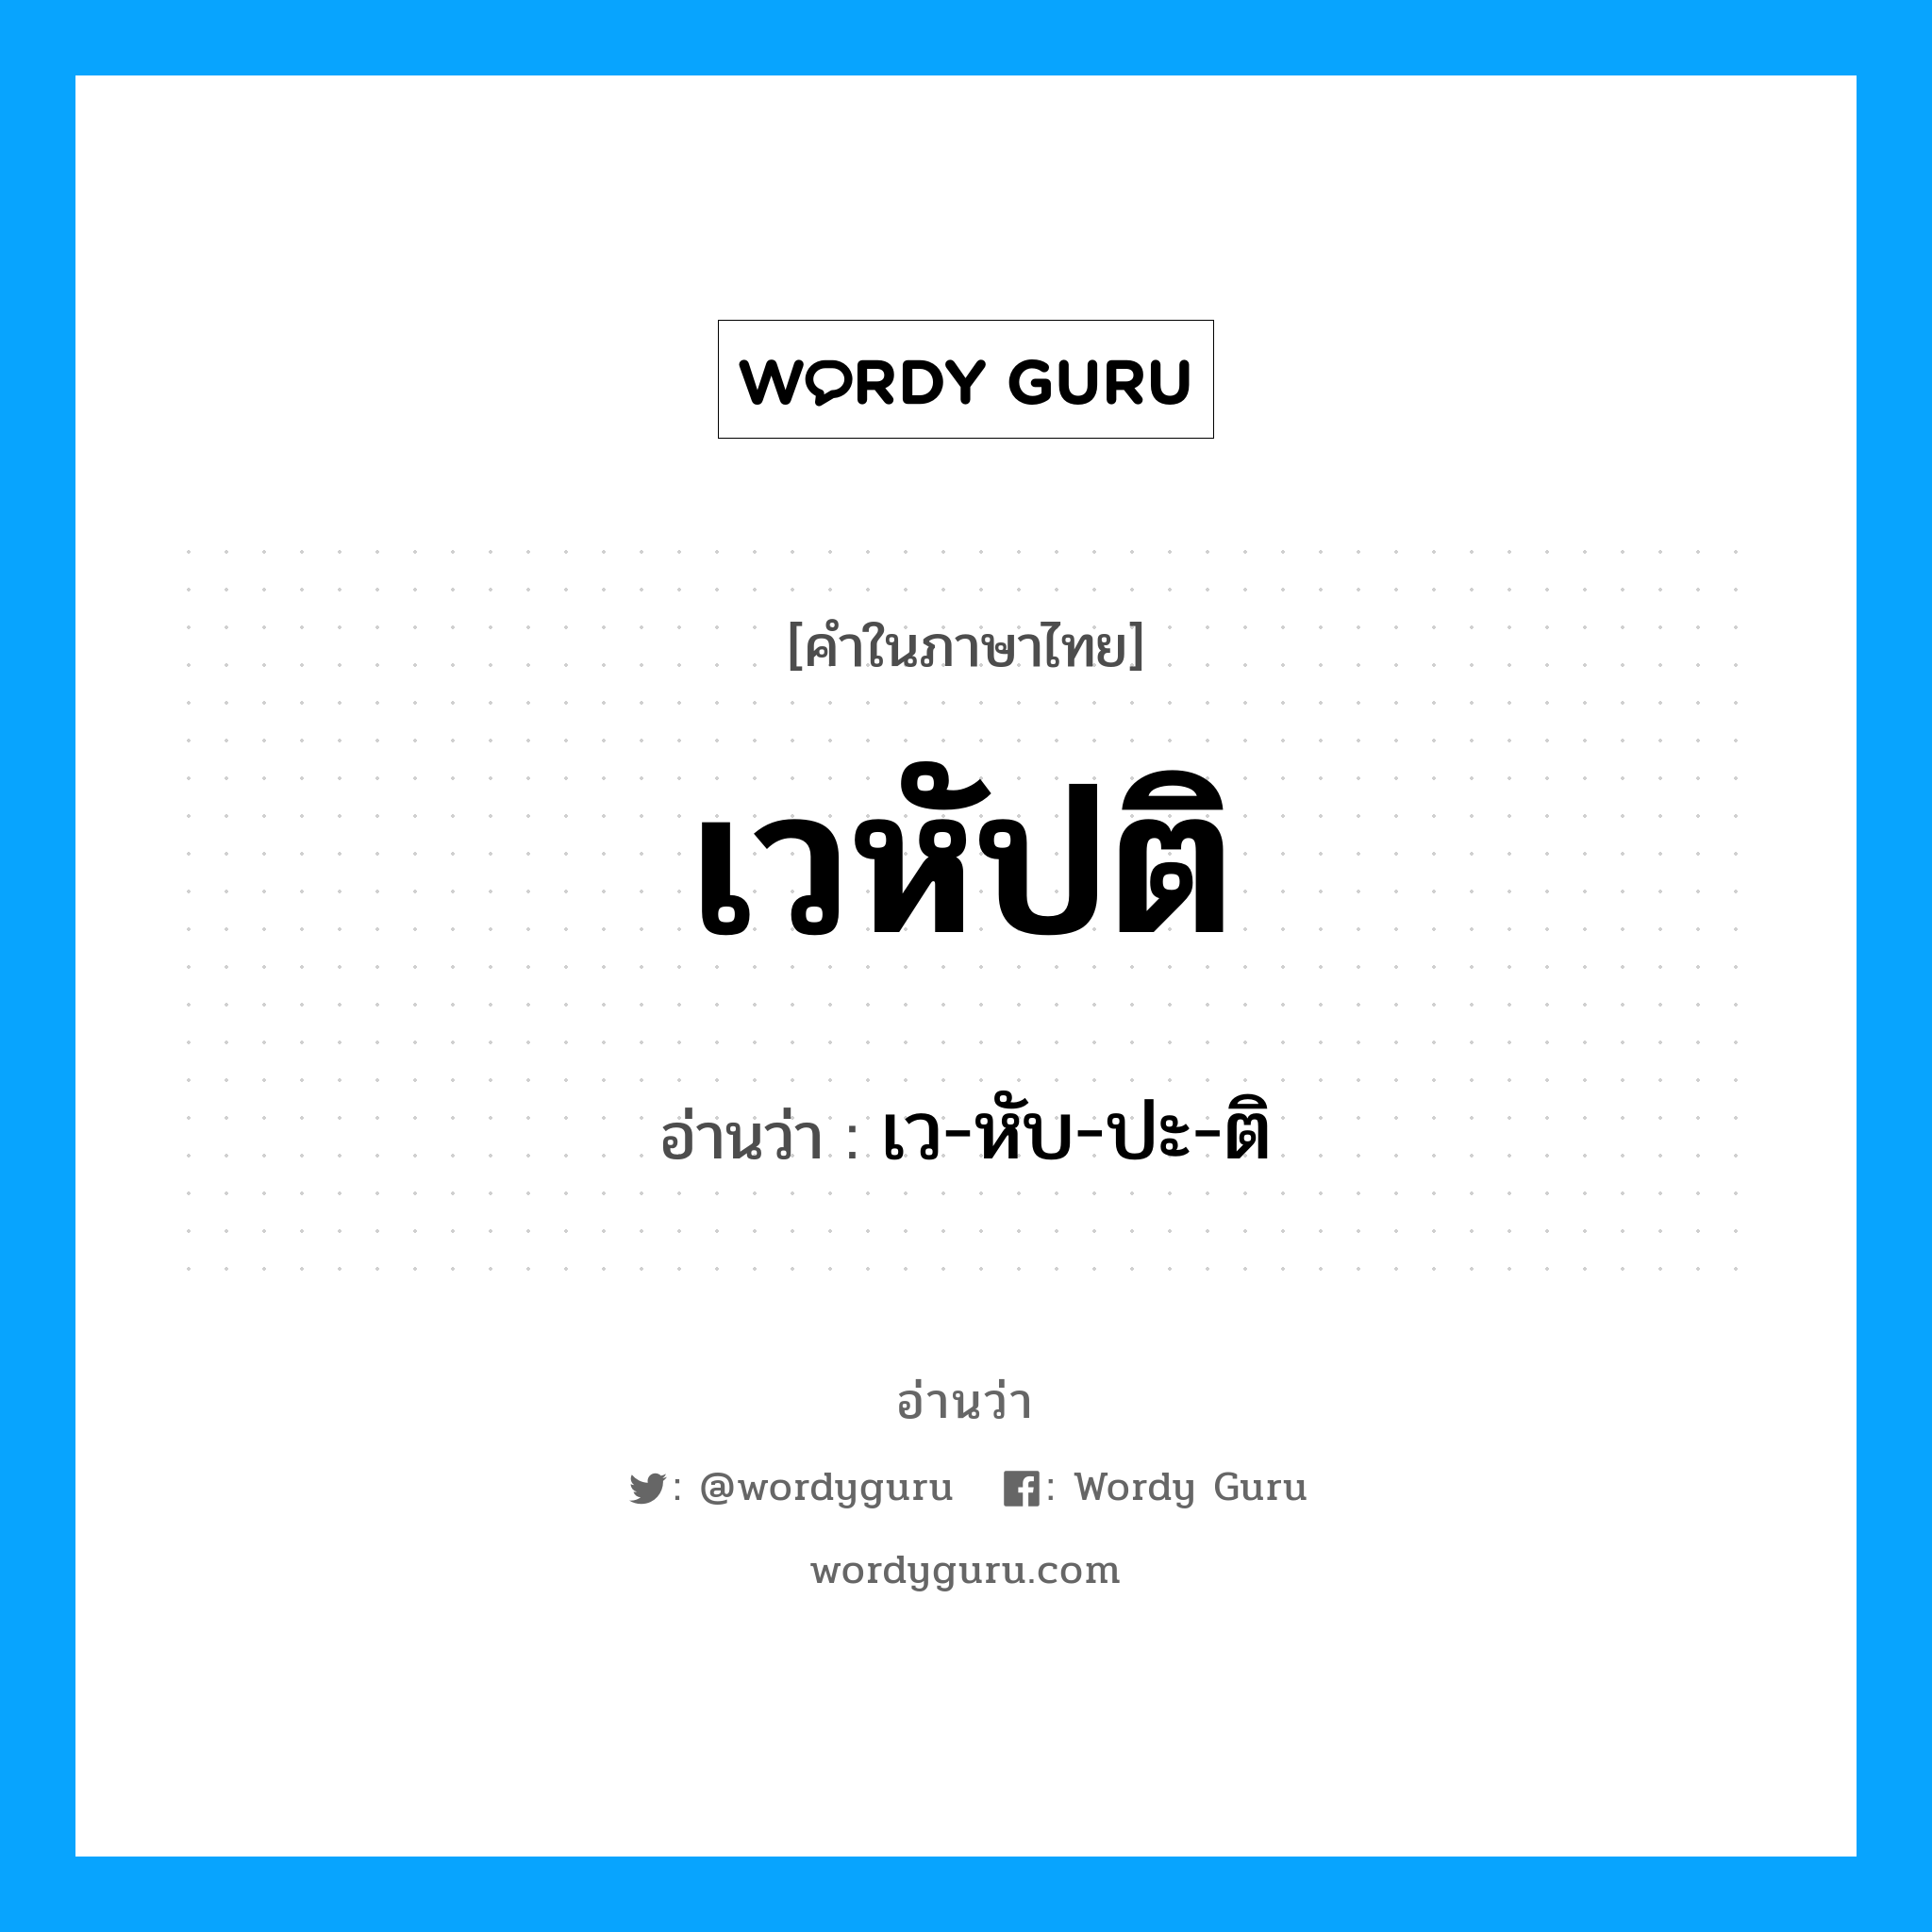 เว-หับ-ปะ-ติ เป็นคำอ่านของคำไหน?, คำในภาษาไทย เว-หับ-ปะ-ติ อ่านว่า เวหัปติ